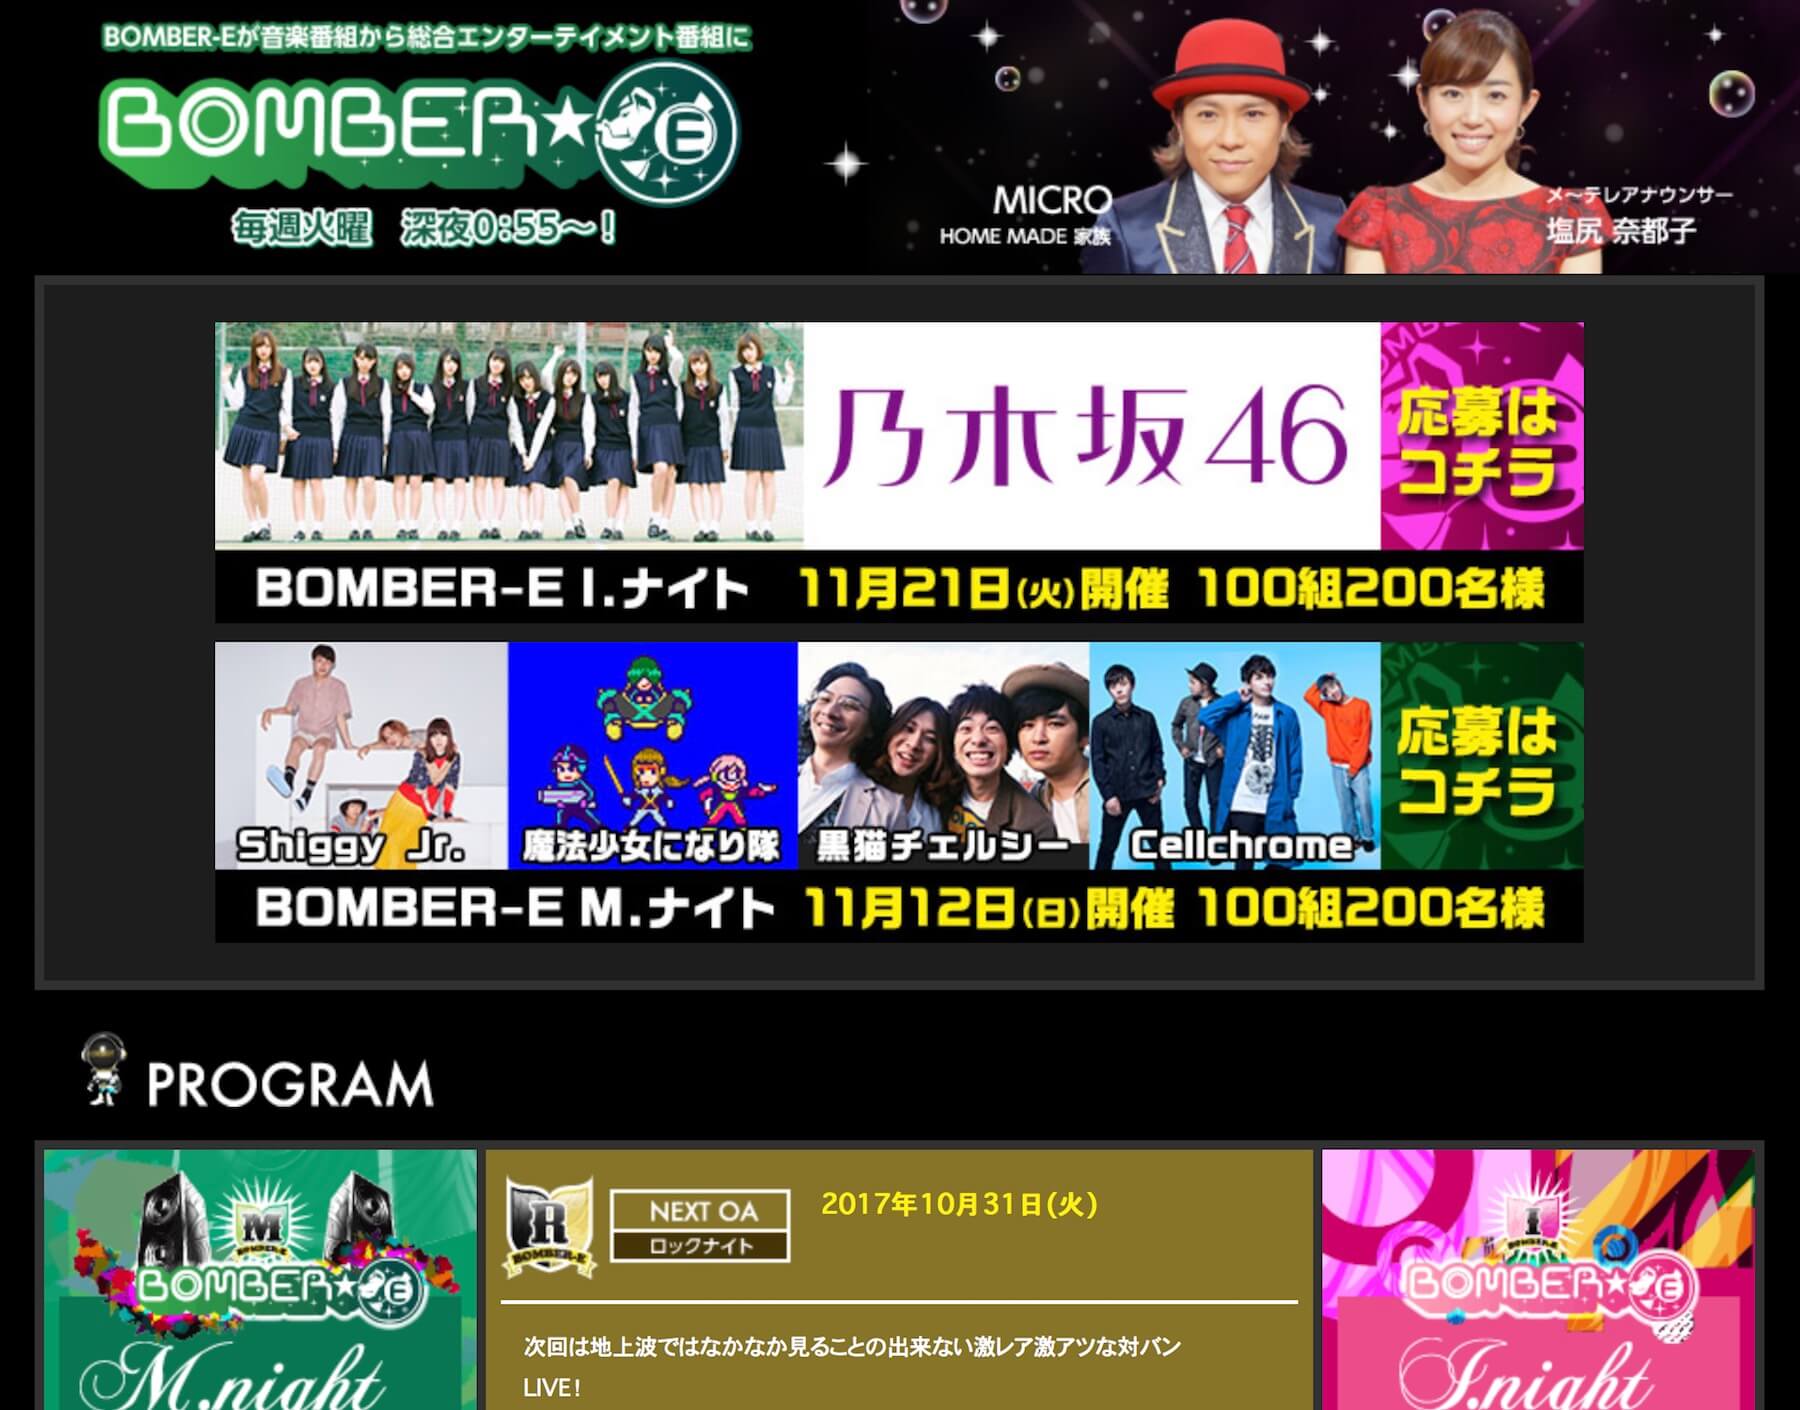 メ～テレ「BOMBER-E」公式サイト